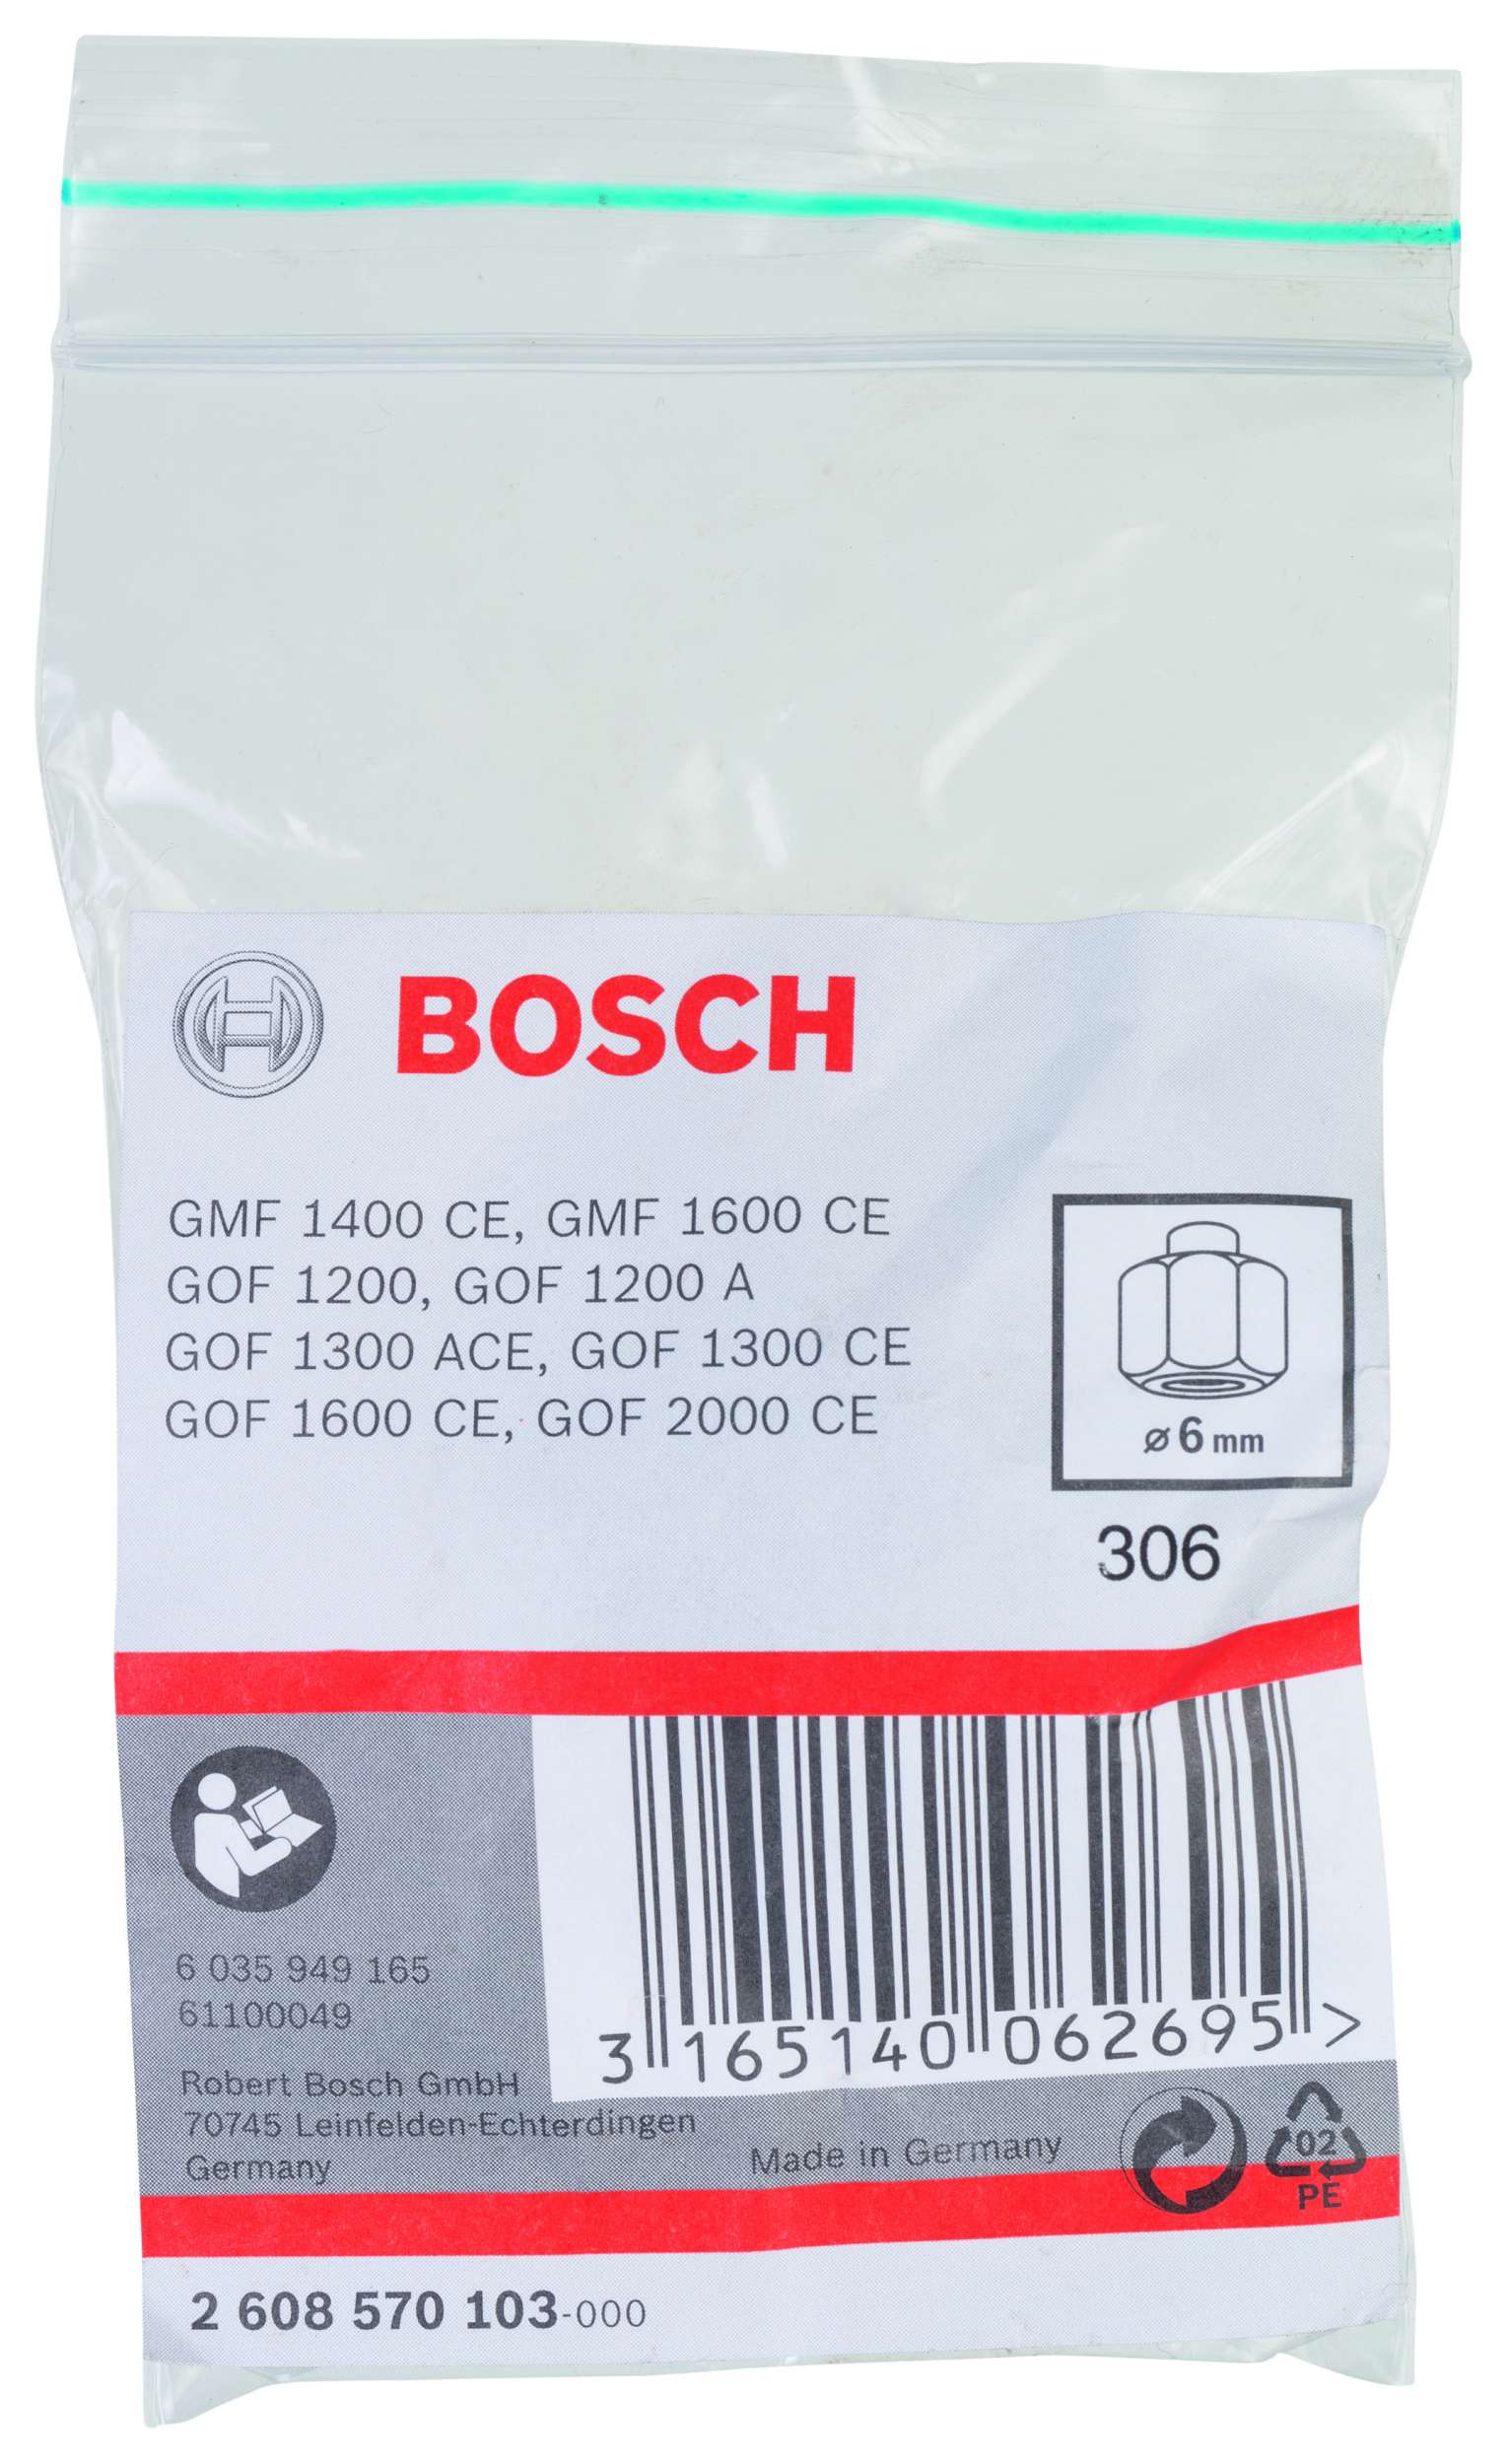 Bosch - 6 mm cap 24 mm Anahtar Genisligi Penset